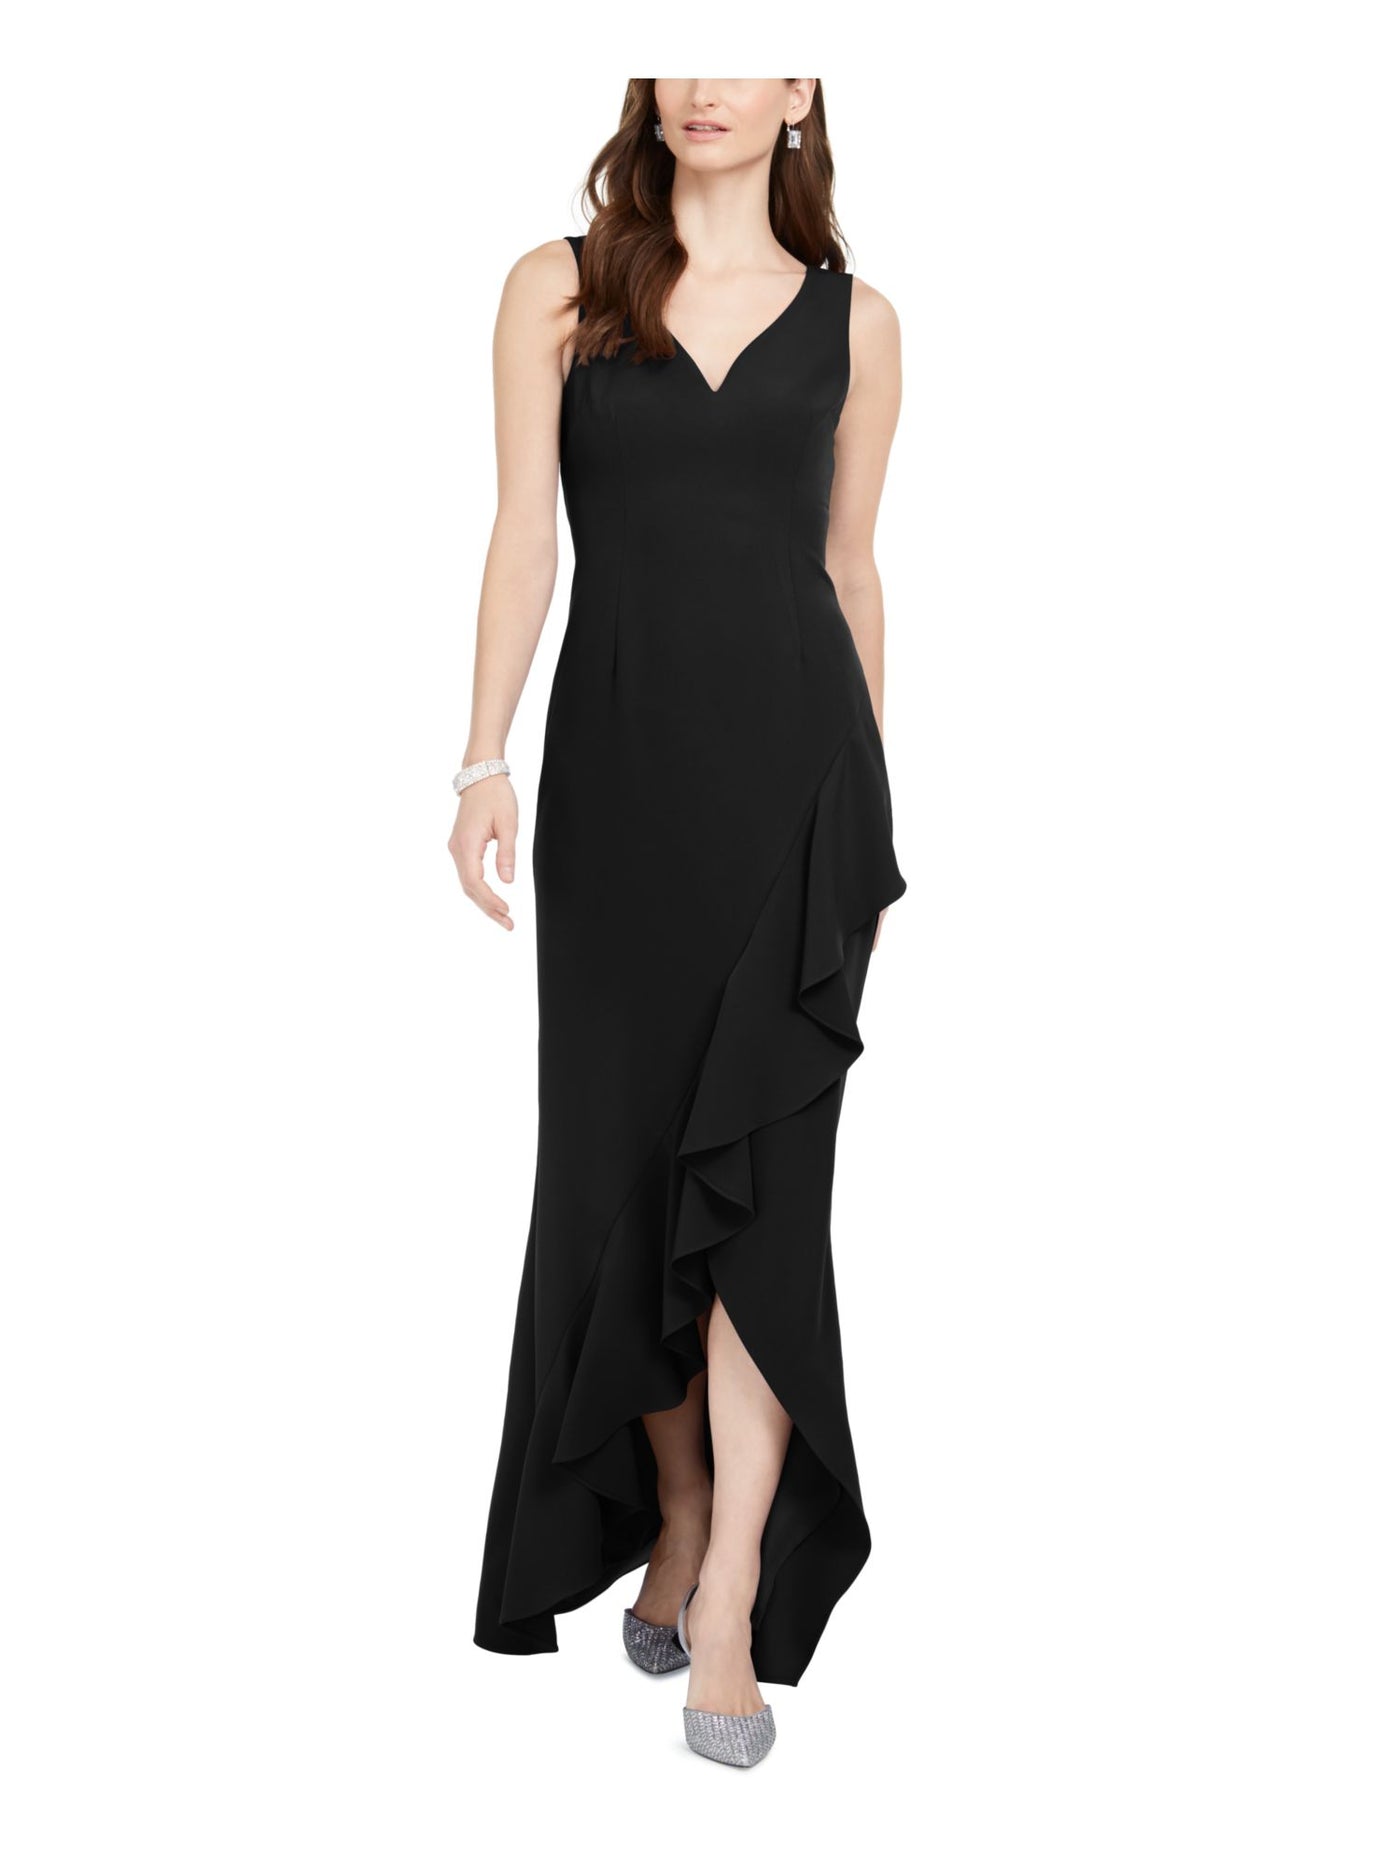 ADRIANNA PAPELL Womens Black Slitted Sleeveless V Neck Full-Length Formal Sheath Dress 0